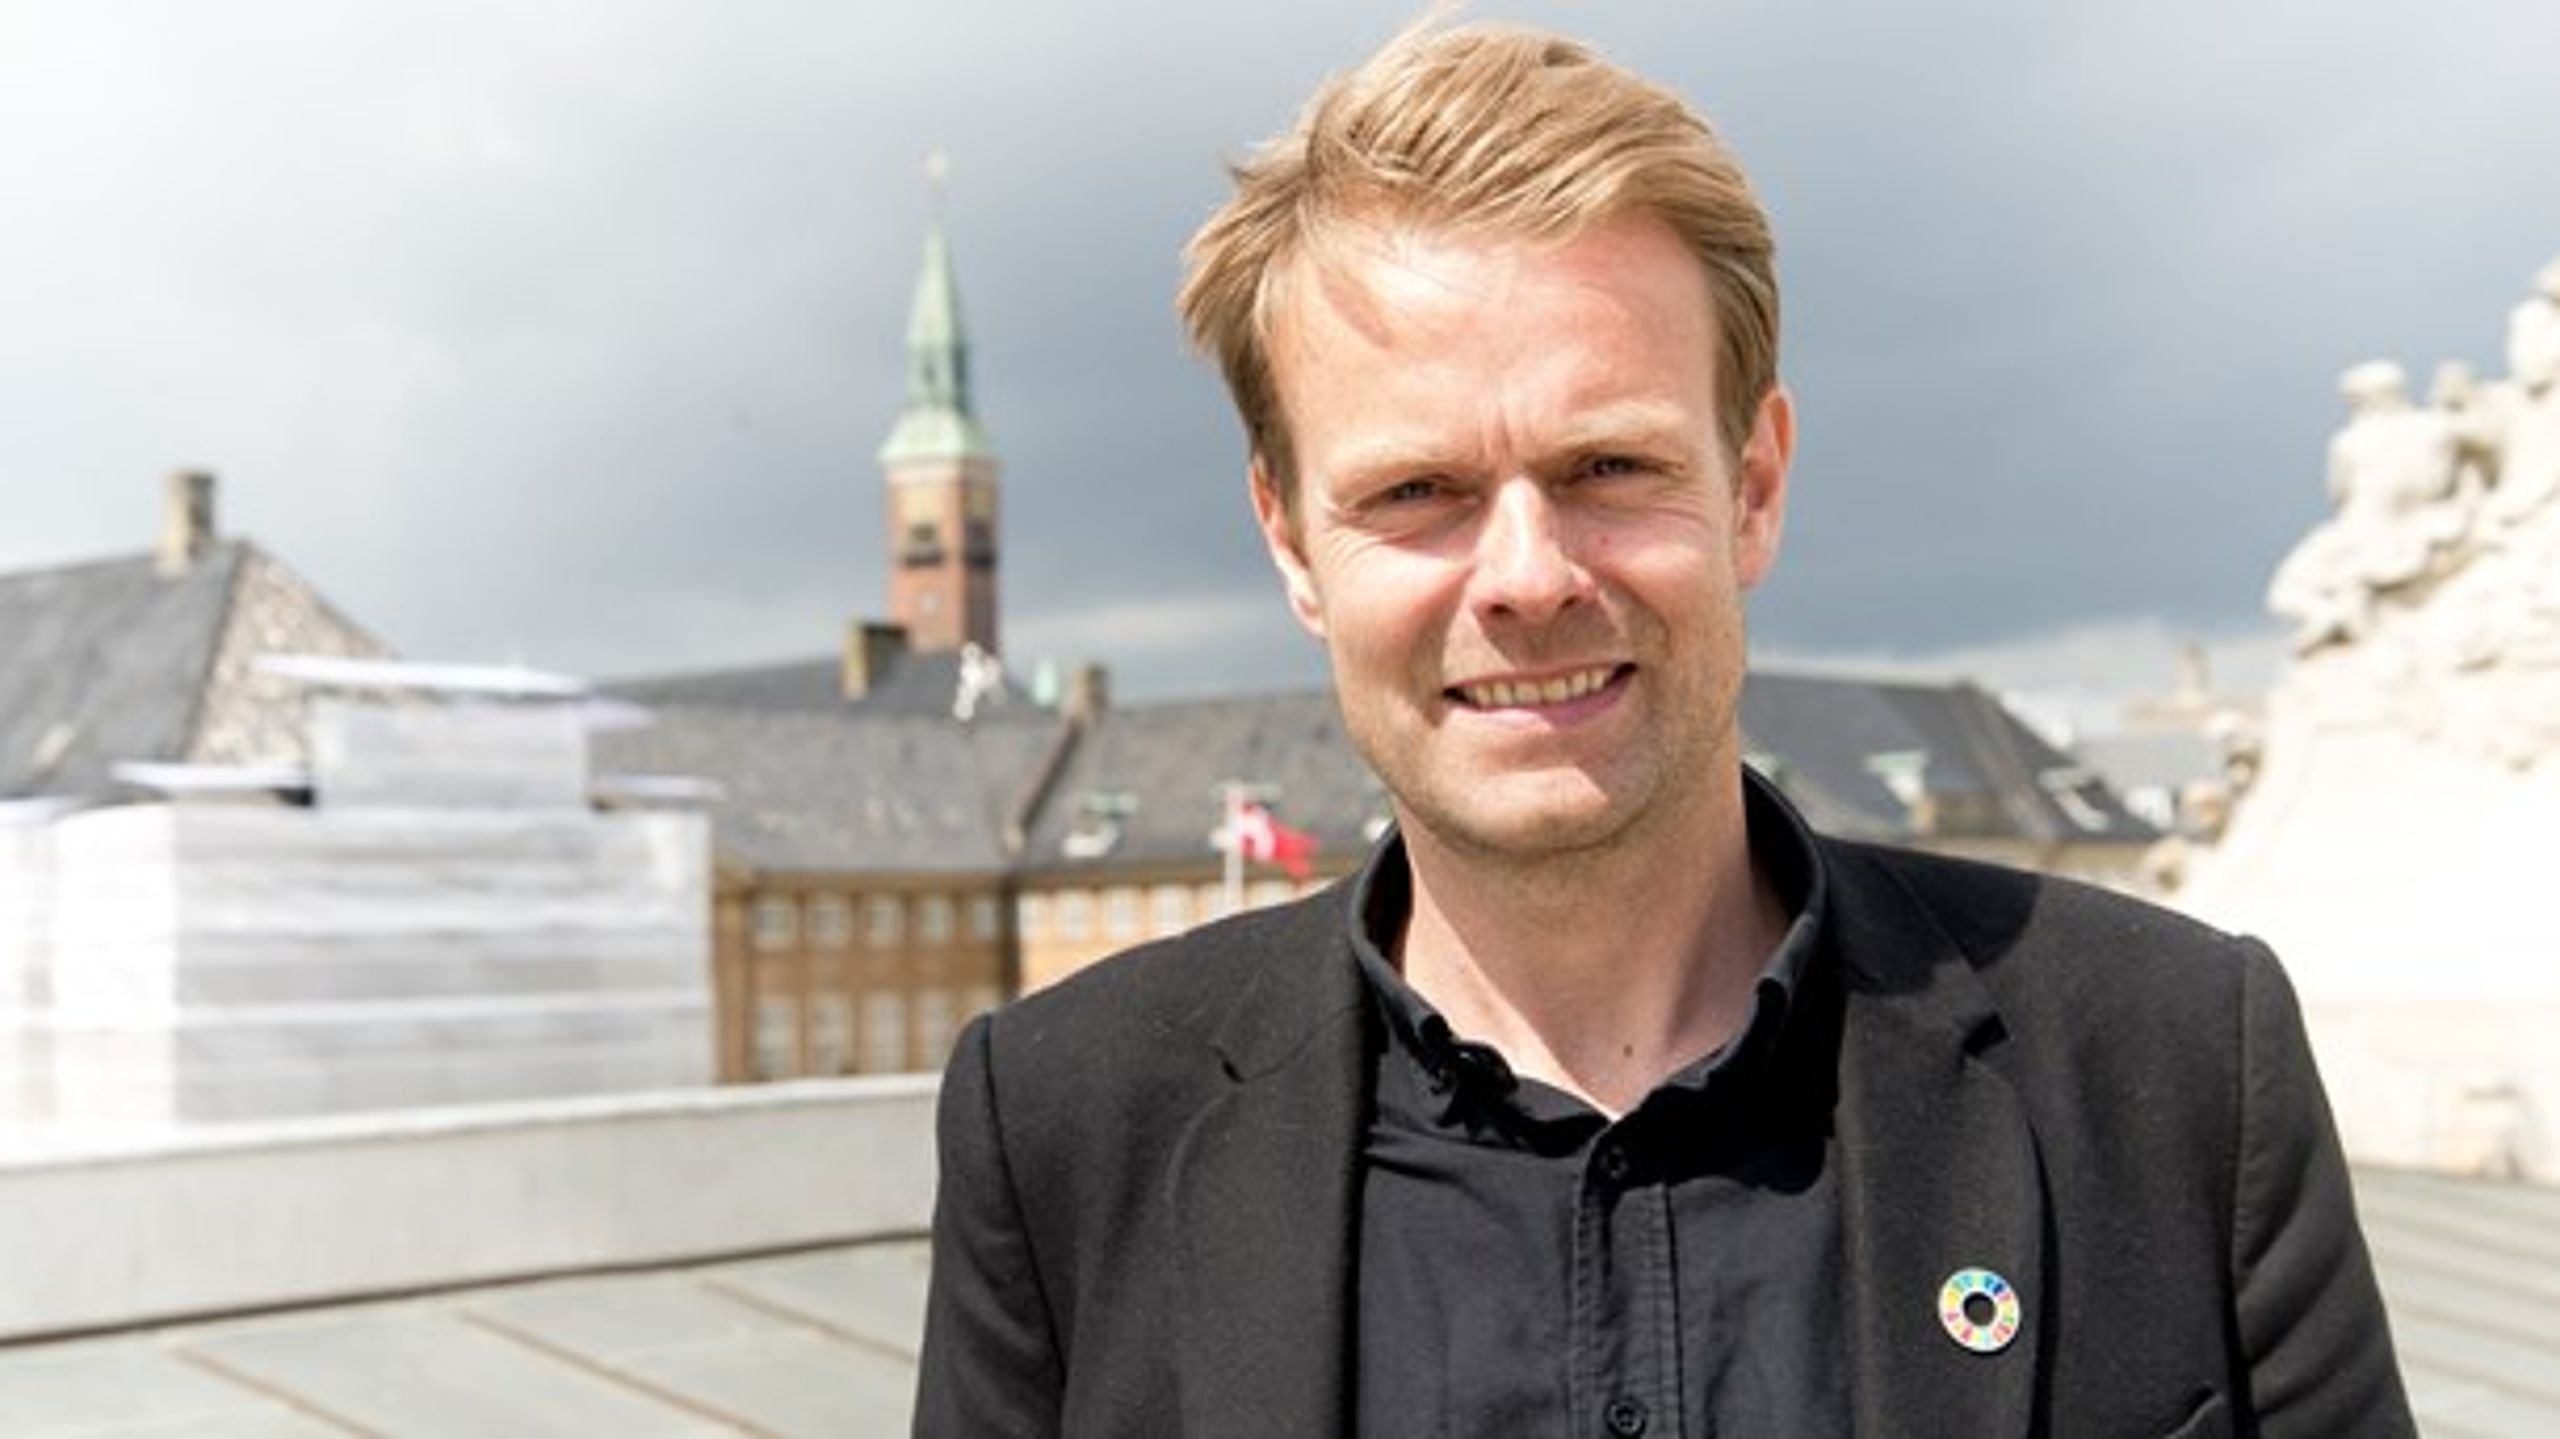 Niko Grünfeld er Alternativets spidskandidat til kommunalvalget i København. Han håber på en borgmesterpost, gerne inden for miljø og teknik eller kultur.